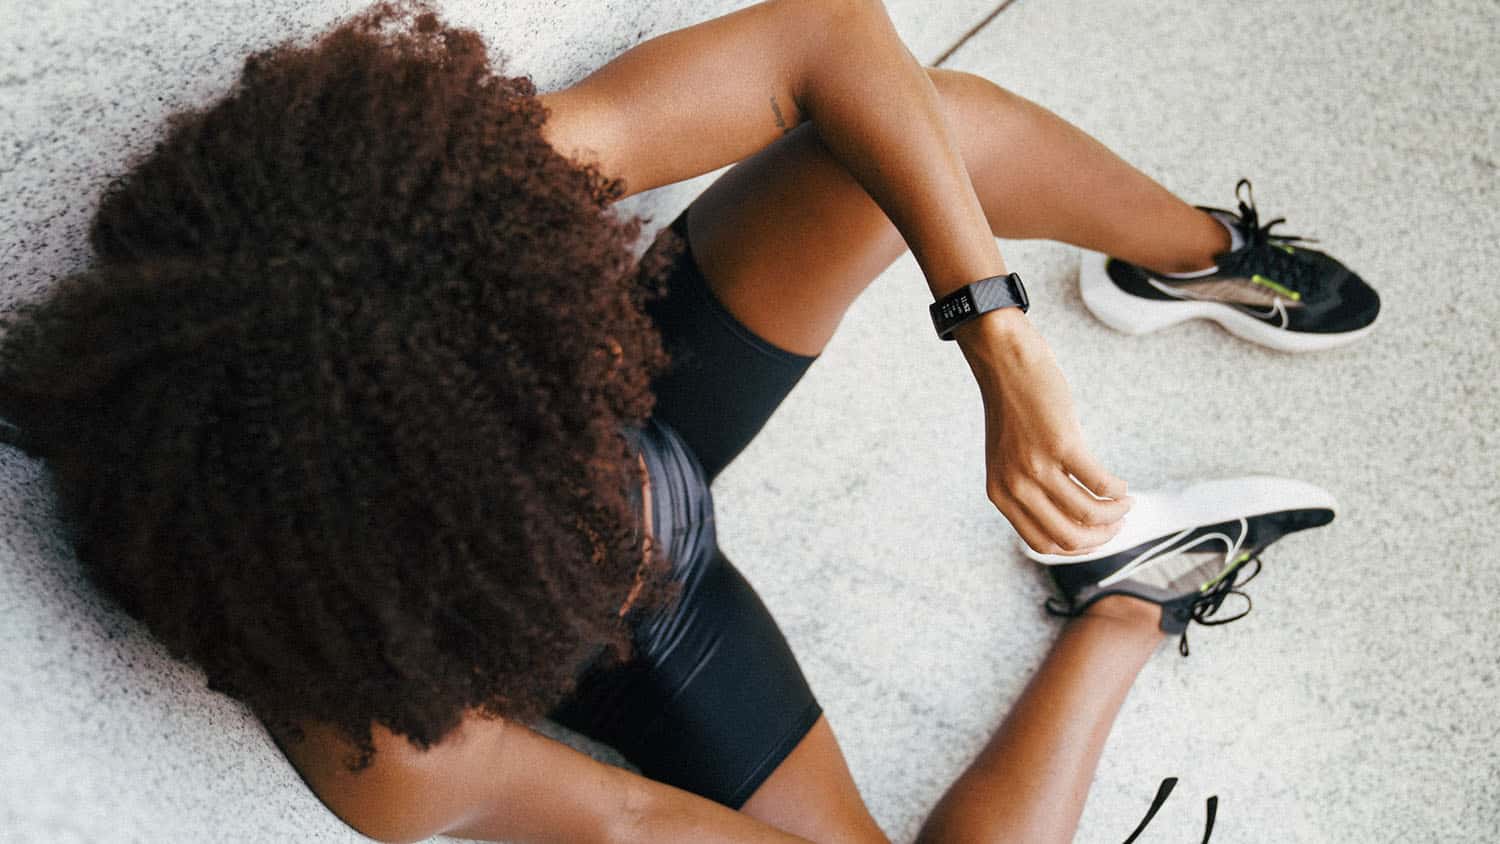 上方照片显示,一位穿运动服的黑人妇女望手腕上的健康监视器